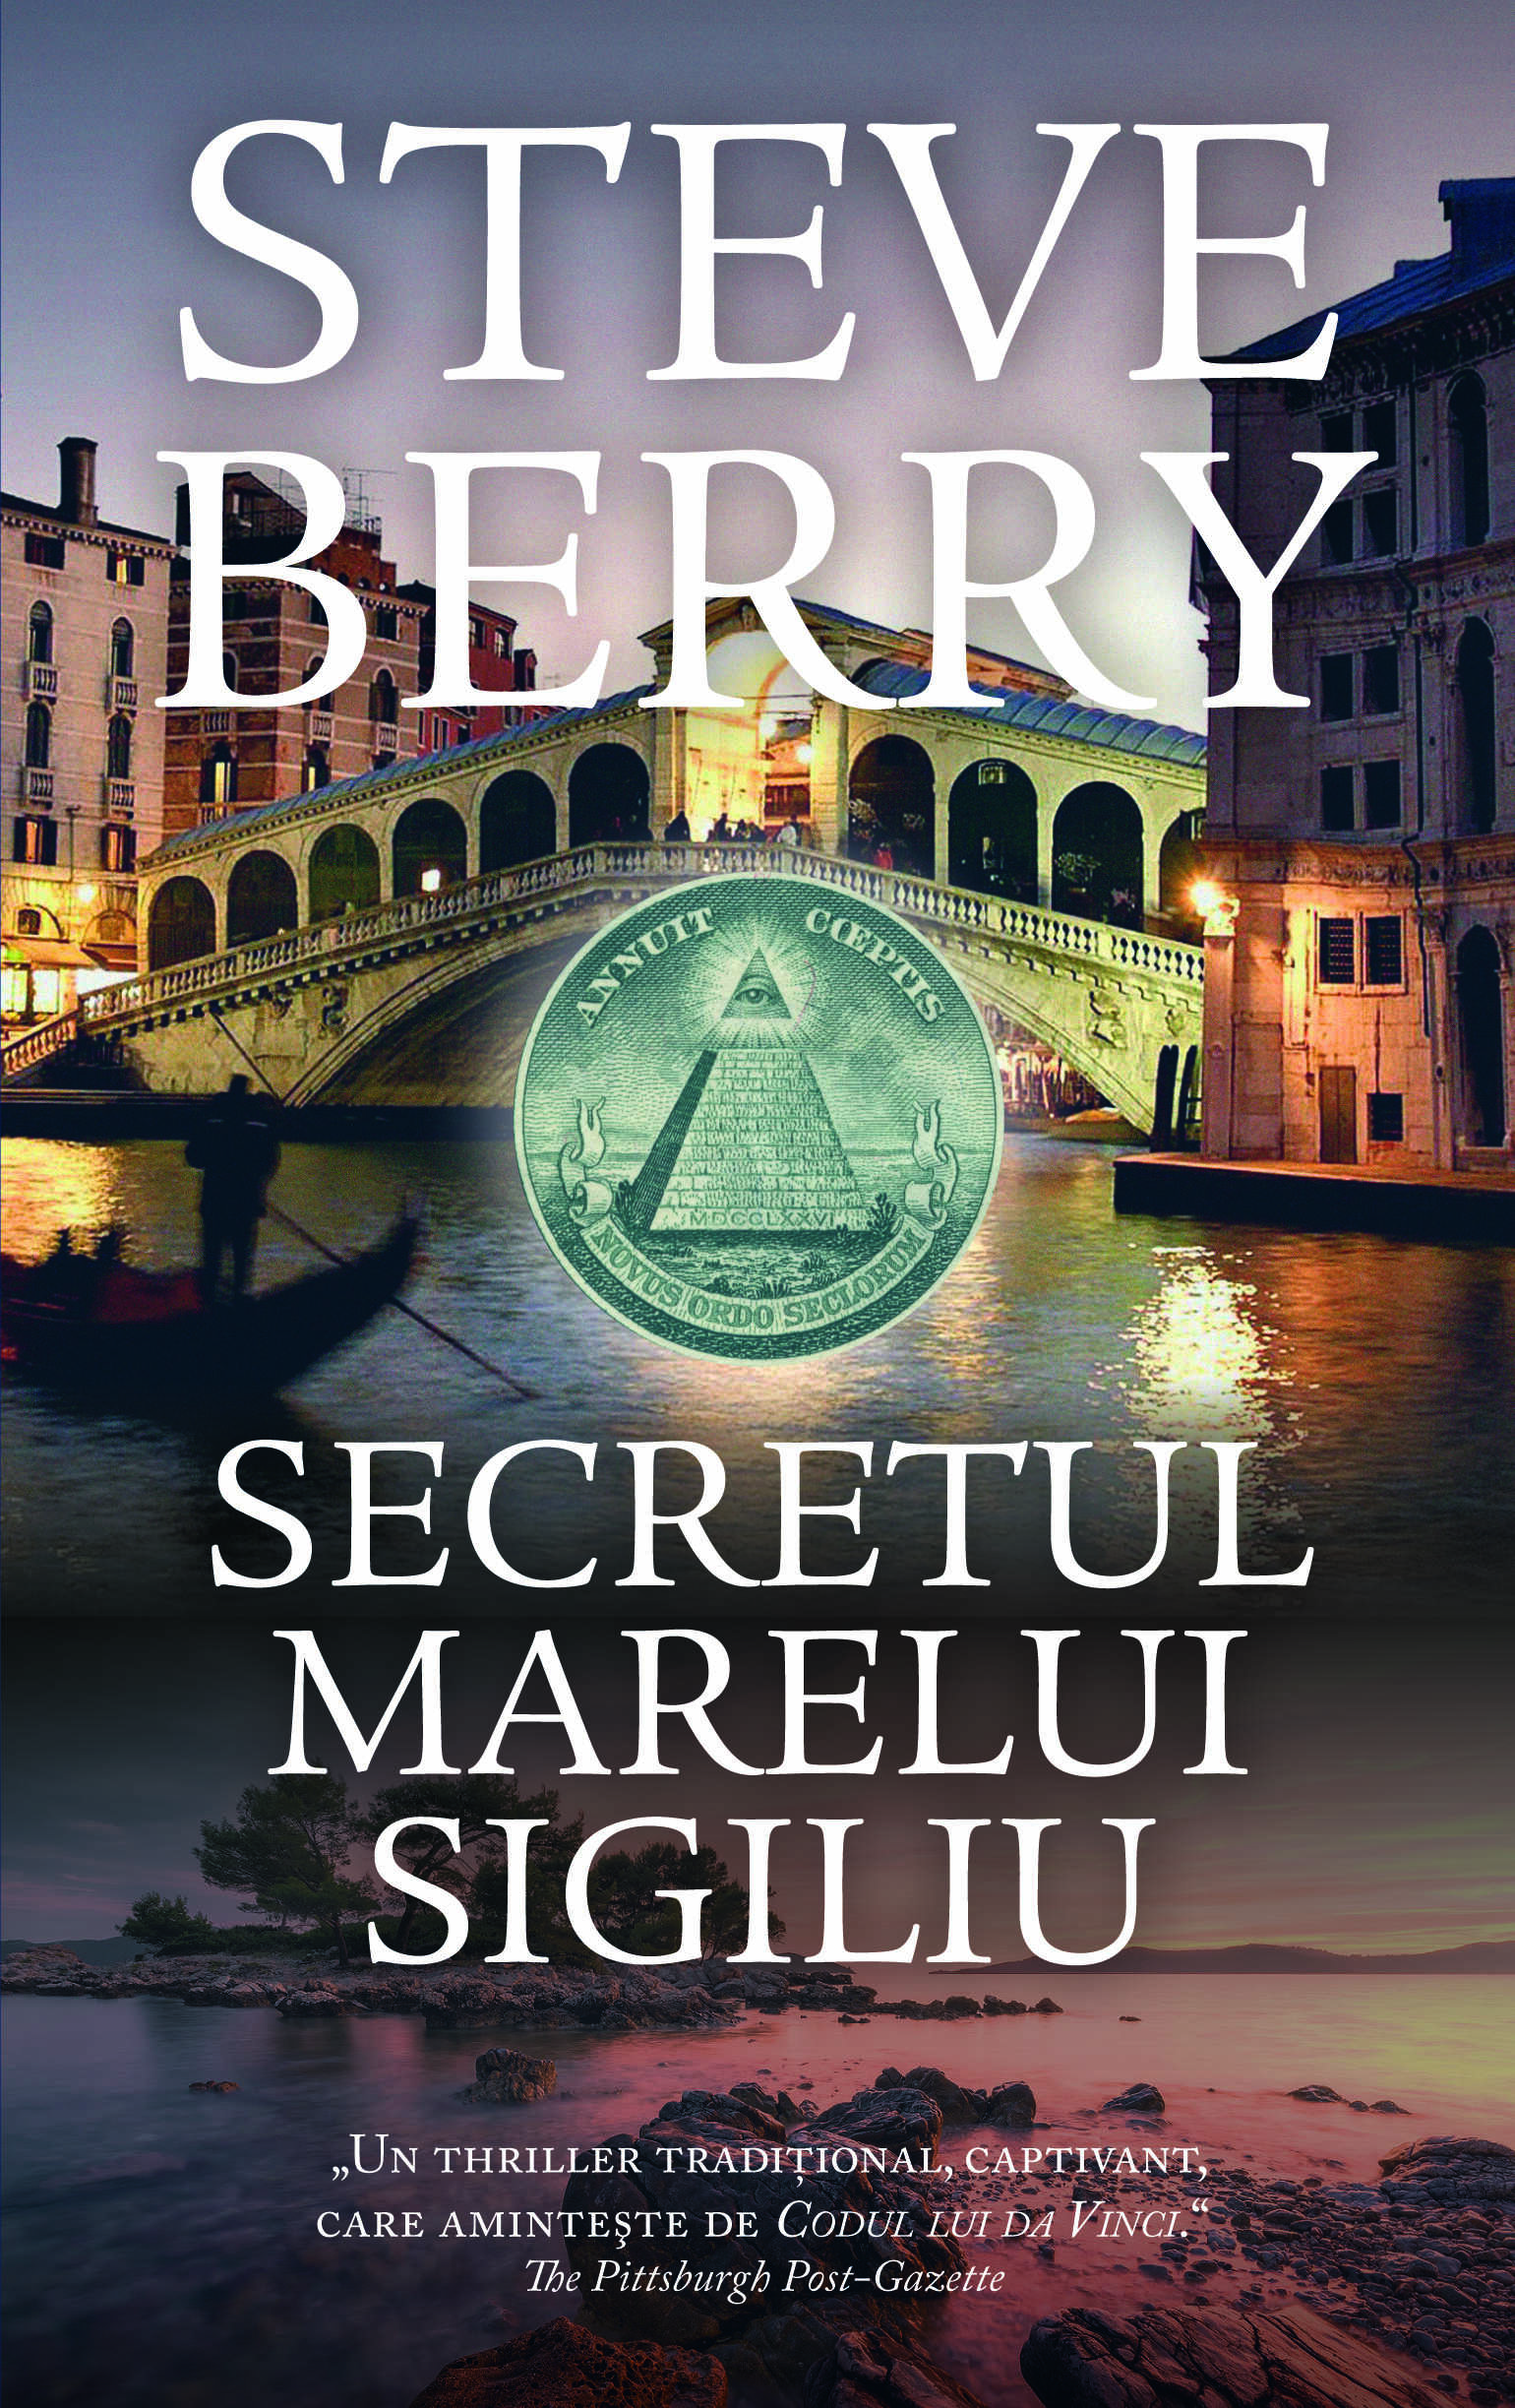 Secretul marelui sigiliu | Steve Berry